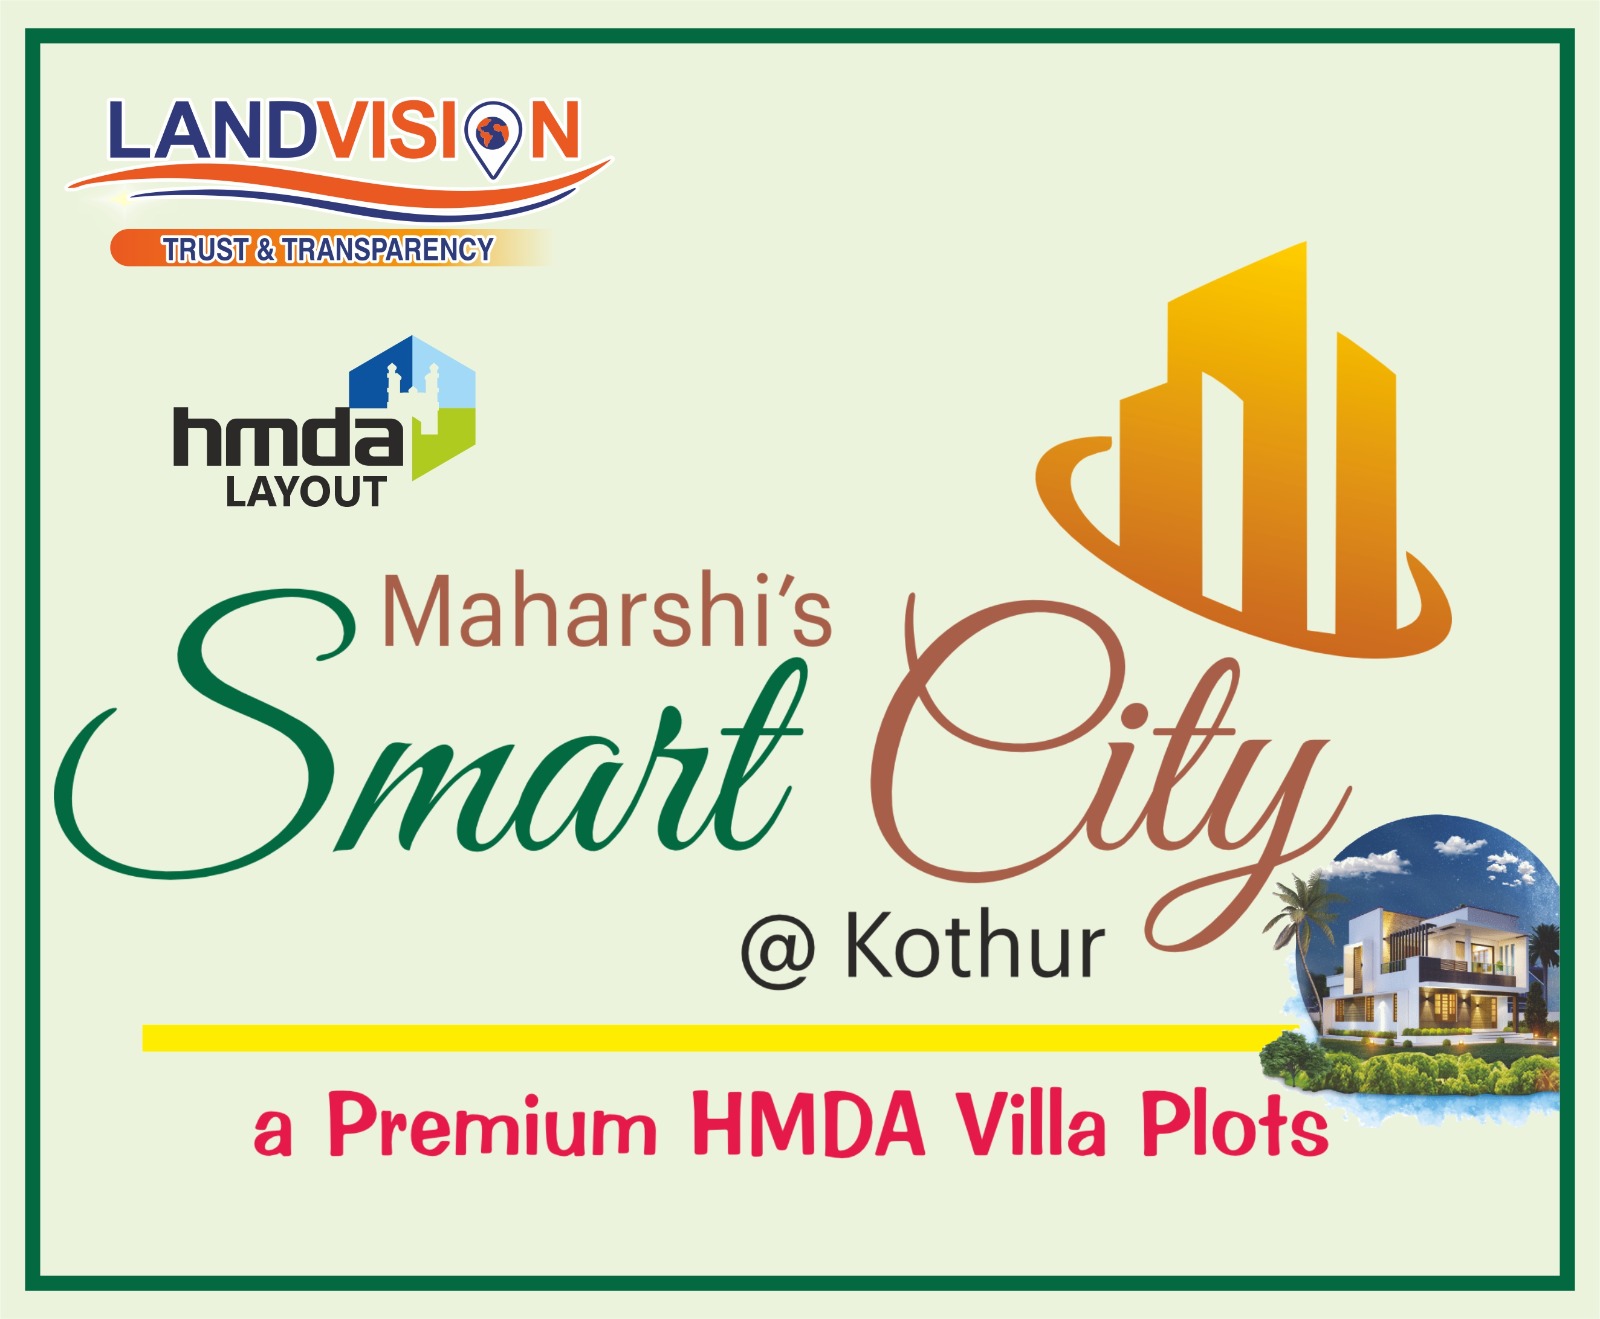 MAHARSHI SMART CITY HMDA